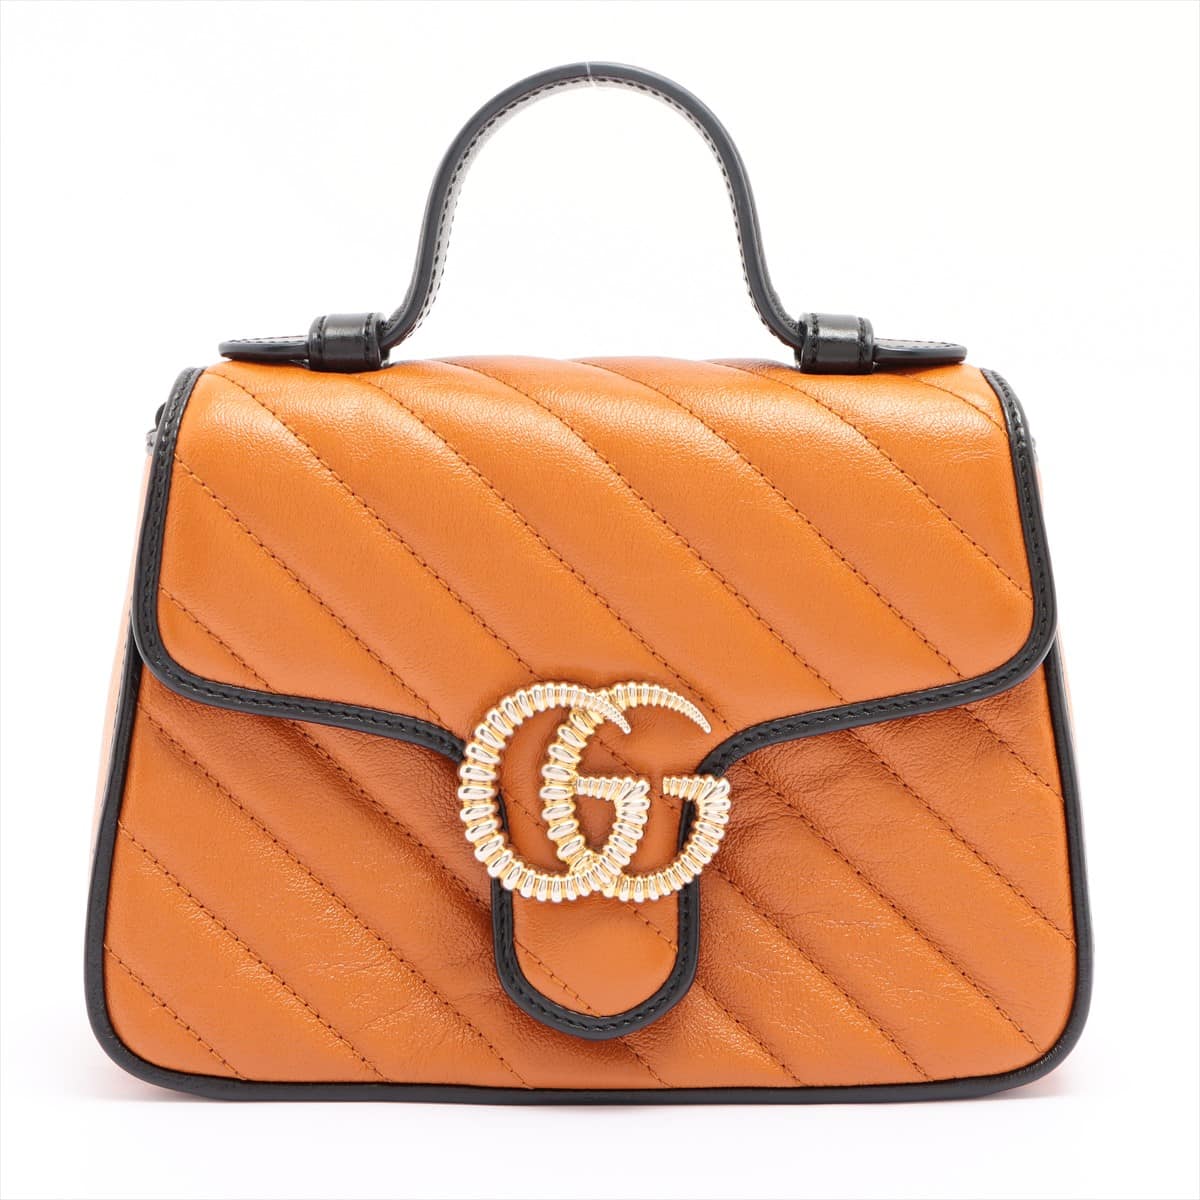 Gucci GG Marmont Leather 2way handbag Brown 583571